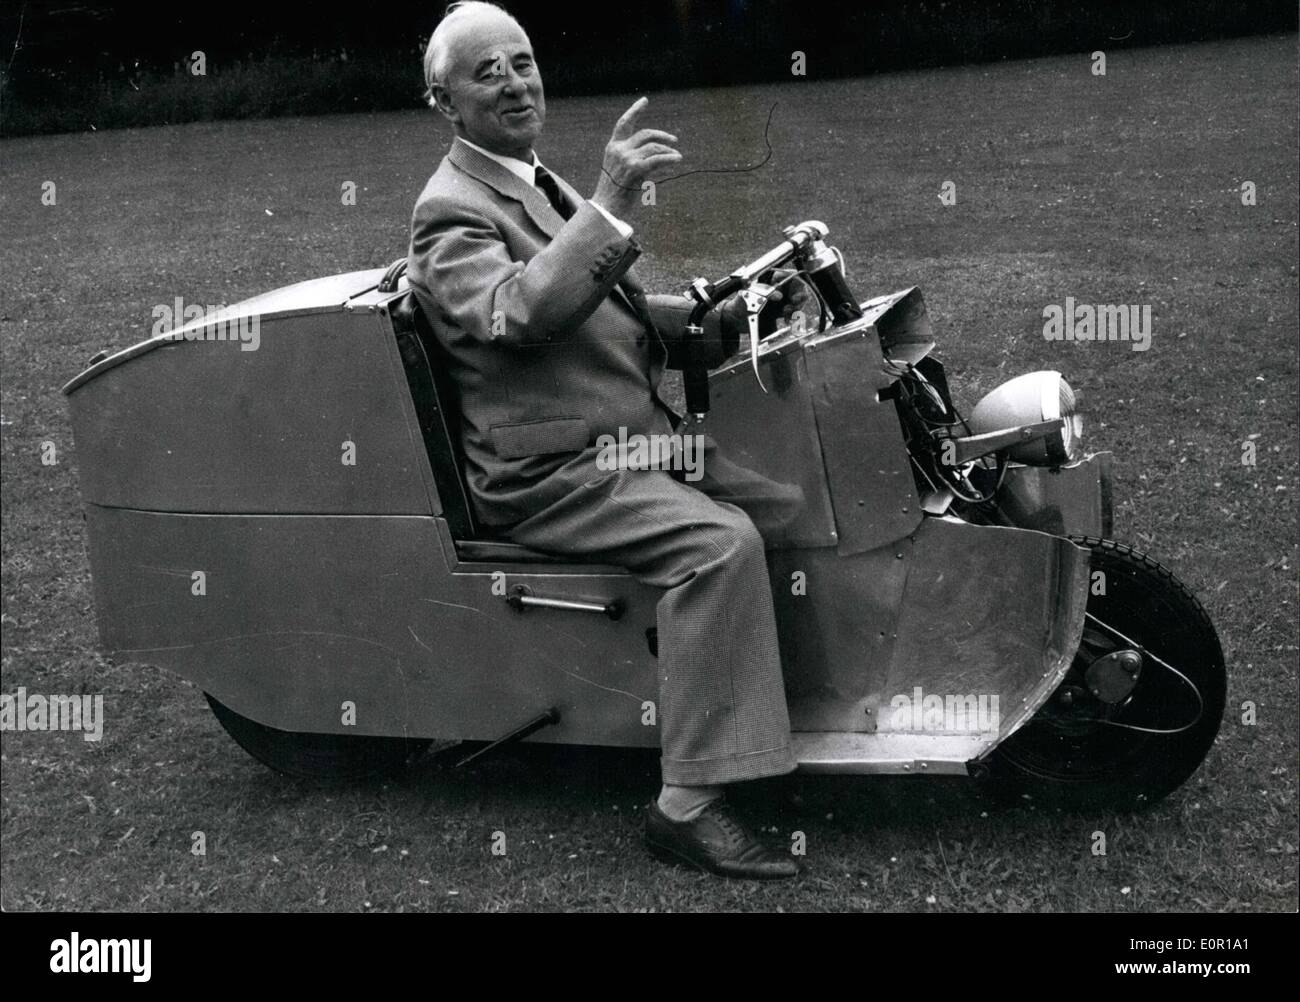 Agosto 08, 1957 - 80- anno vecchio Sir Alliot Roe progetta un ''auto su due ruote''. : 80 anni di Sir Alliott Verdon-Roe co-fondatore con il fratello del famoso A.V. Il Roe aeromobile fermo, e il primo a volare in Gran Bretagna 49 anni fa - ha inventato un albero-azionata ''poltrona'' moto-scooter, che sarà la Gran Bretagna è rispondere alla invasione di machies estera. Sir Alliott dice che è la cosa più vicina a una macchina su due ruote. Il 60 m.p.h. Avle Biar ha il suo posto di guida situato tra la ruota e non sopra la ruota posteriore come standard su scooter - ed è su un piede inferiore Foto Stock